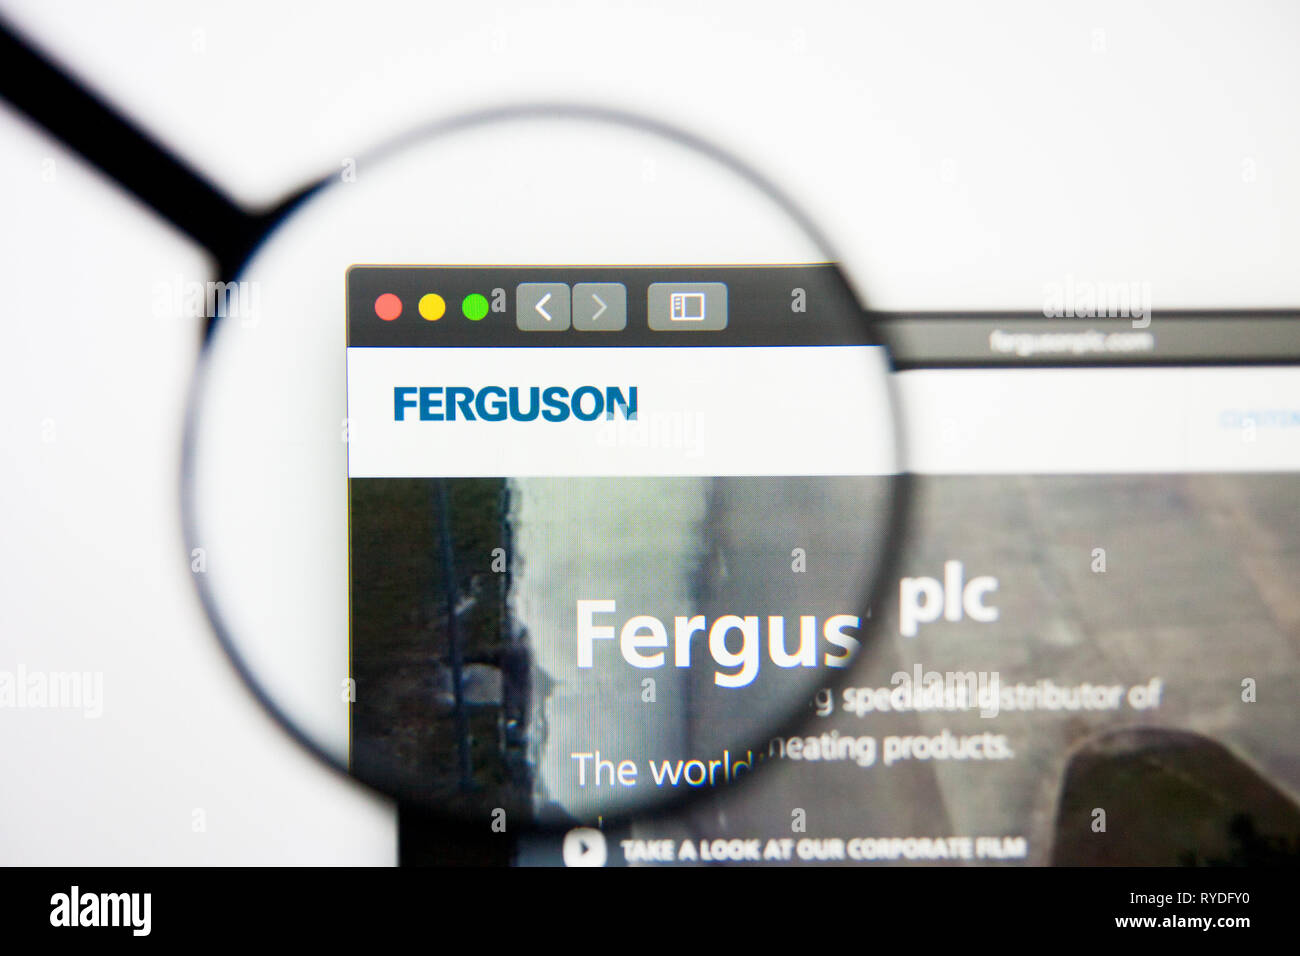 Los Angeles, California, Stati Uniti d'America - 5 Marzo 2019: Ferguson website homepage. Logo Ferguson visibile sulla schermata di visualizzazione illustrativa editoriale Foto Stock